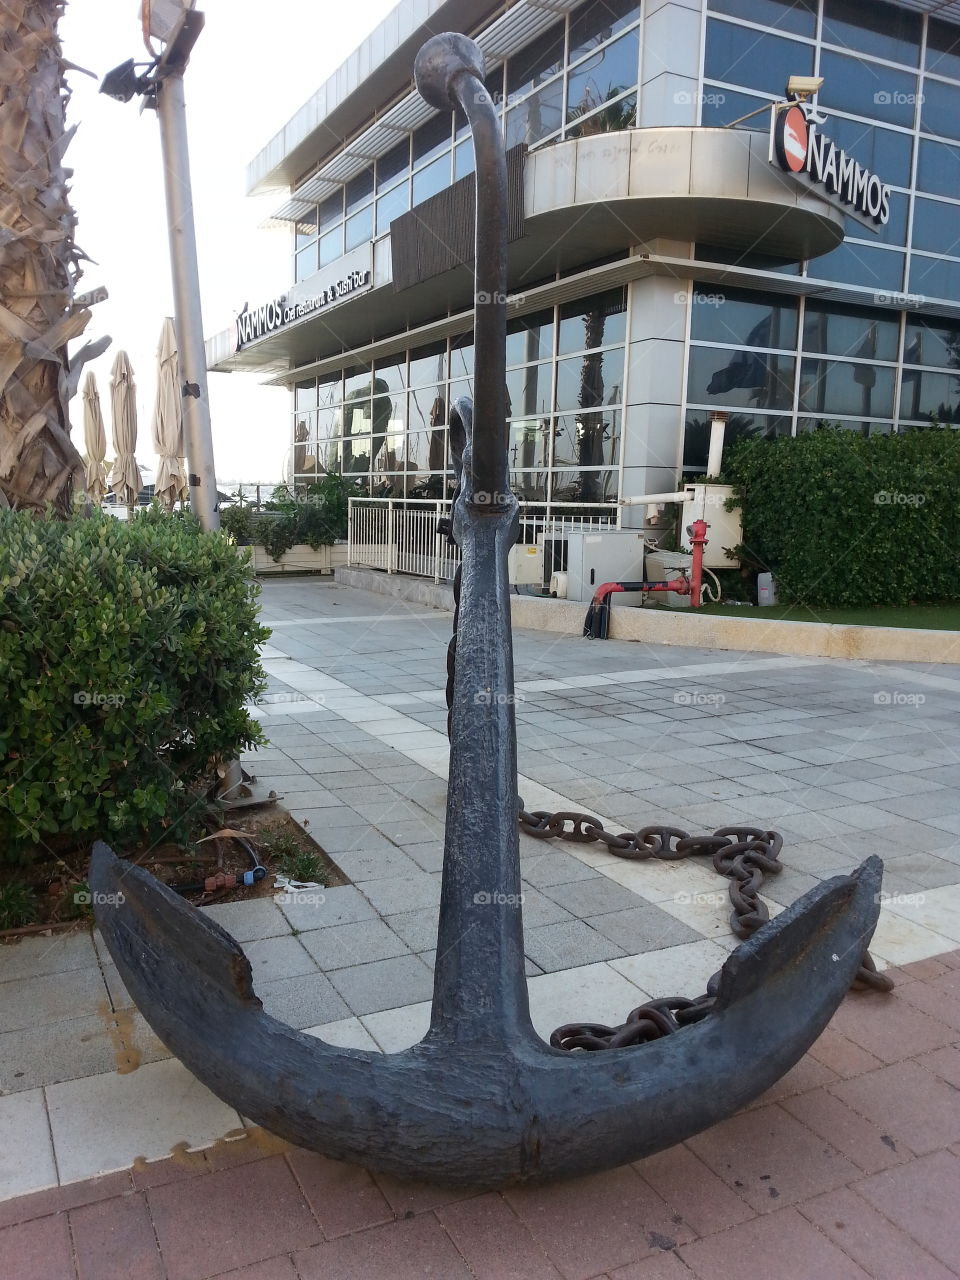 An anchor